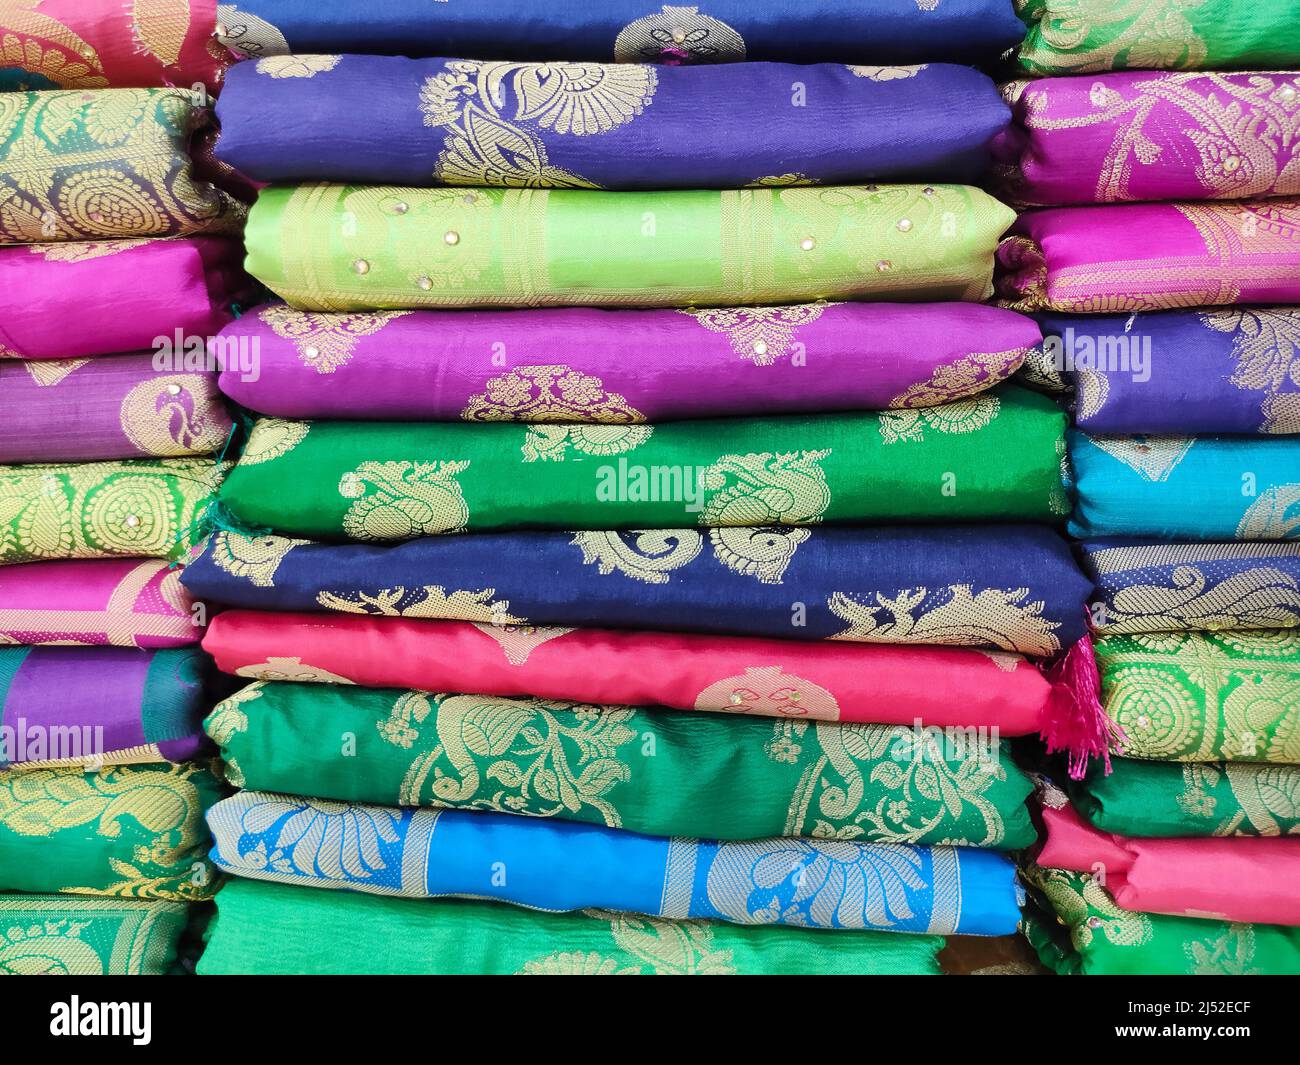 Rouleaux de tissus et textiles en magasin. Motifs indiens multicolores sur les tissus du marché en rouleaux. Magasin de tissus à Pune, Maharashtra, Inde. Banque D'Images